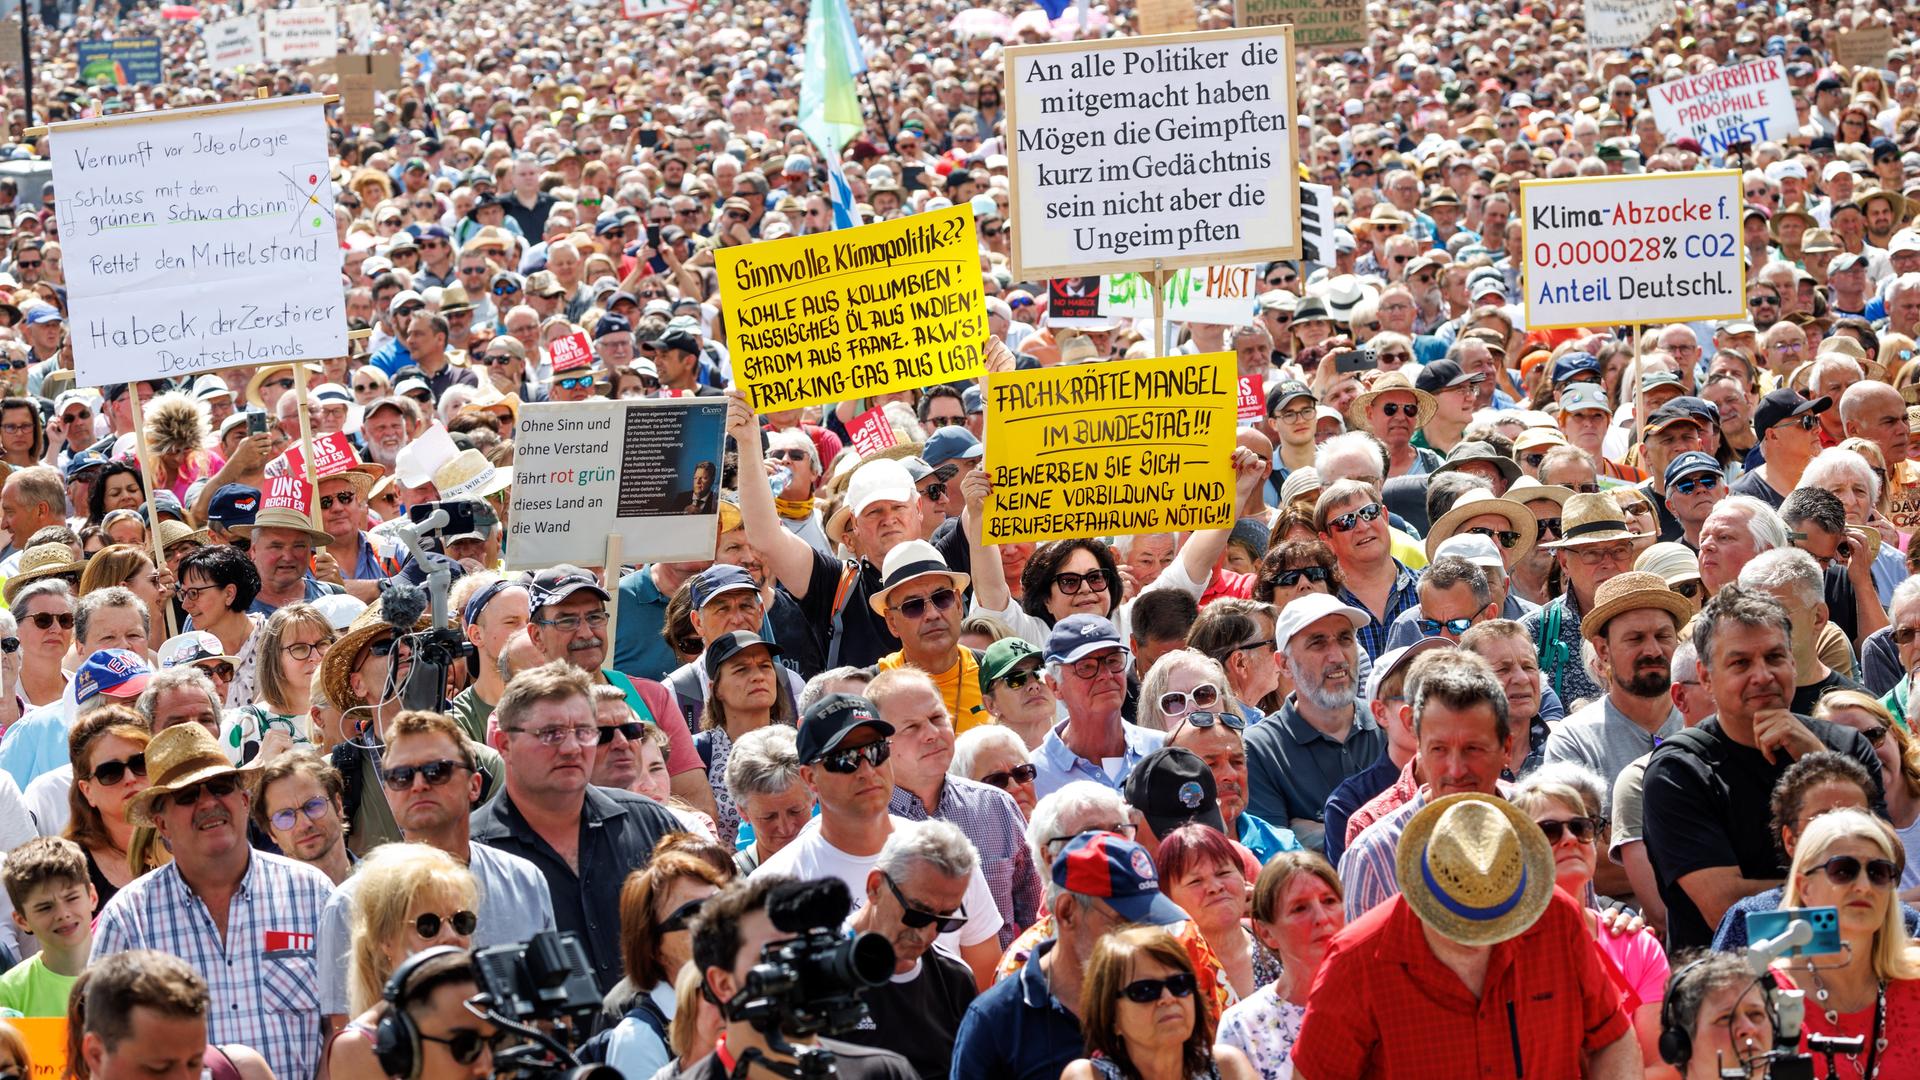 Teilnehmer halten bei einer Demonstration gegen die Klima-Politik der Ampelregierung unter dem Motto "Stoppt die Heizungsideologie" Schilder mit Aufschriften wie "Vernunft vor Ideologie - Schluss mit dem grünen Schwachsinn!" in die Höhe.